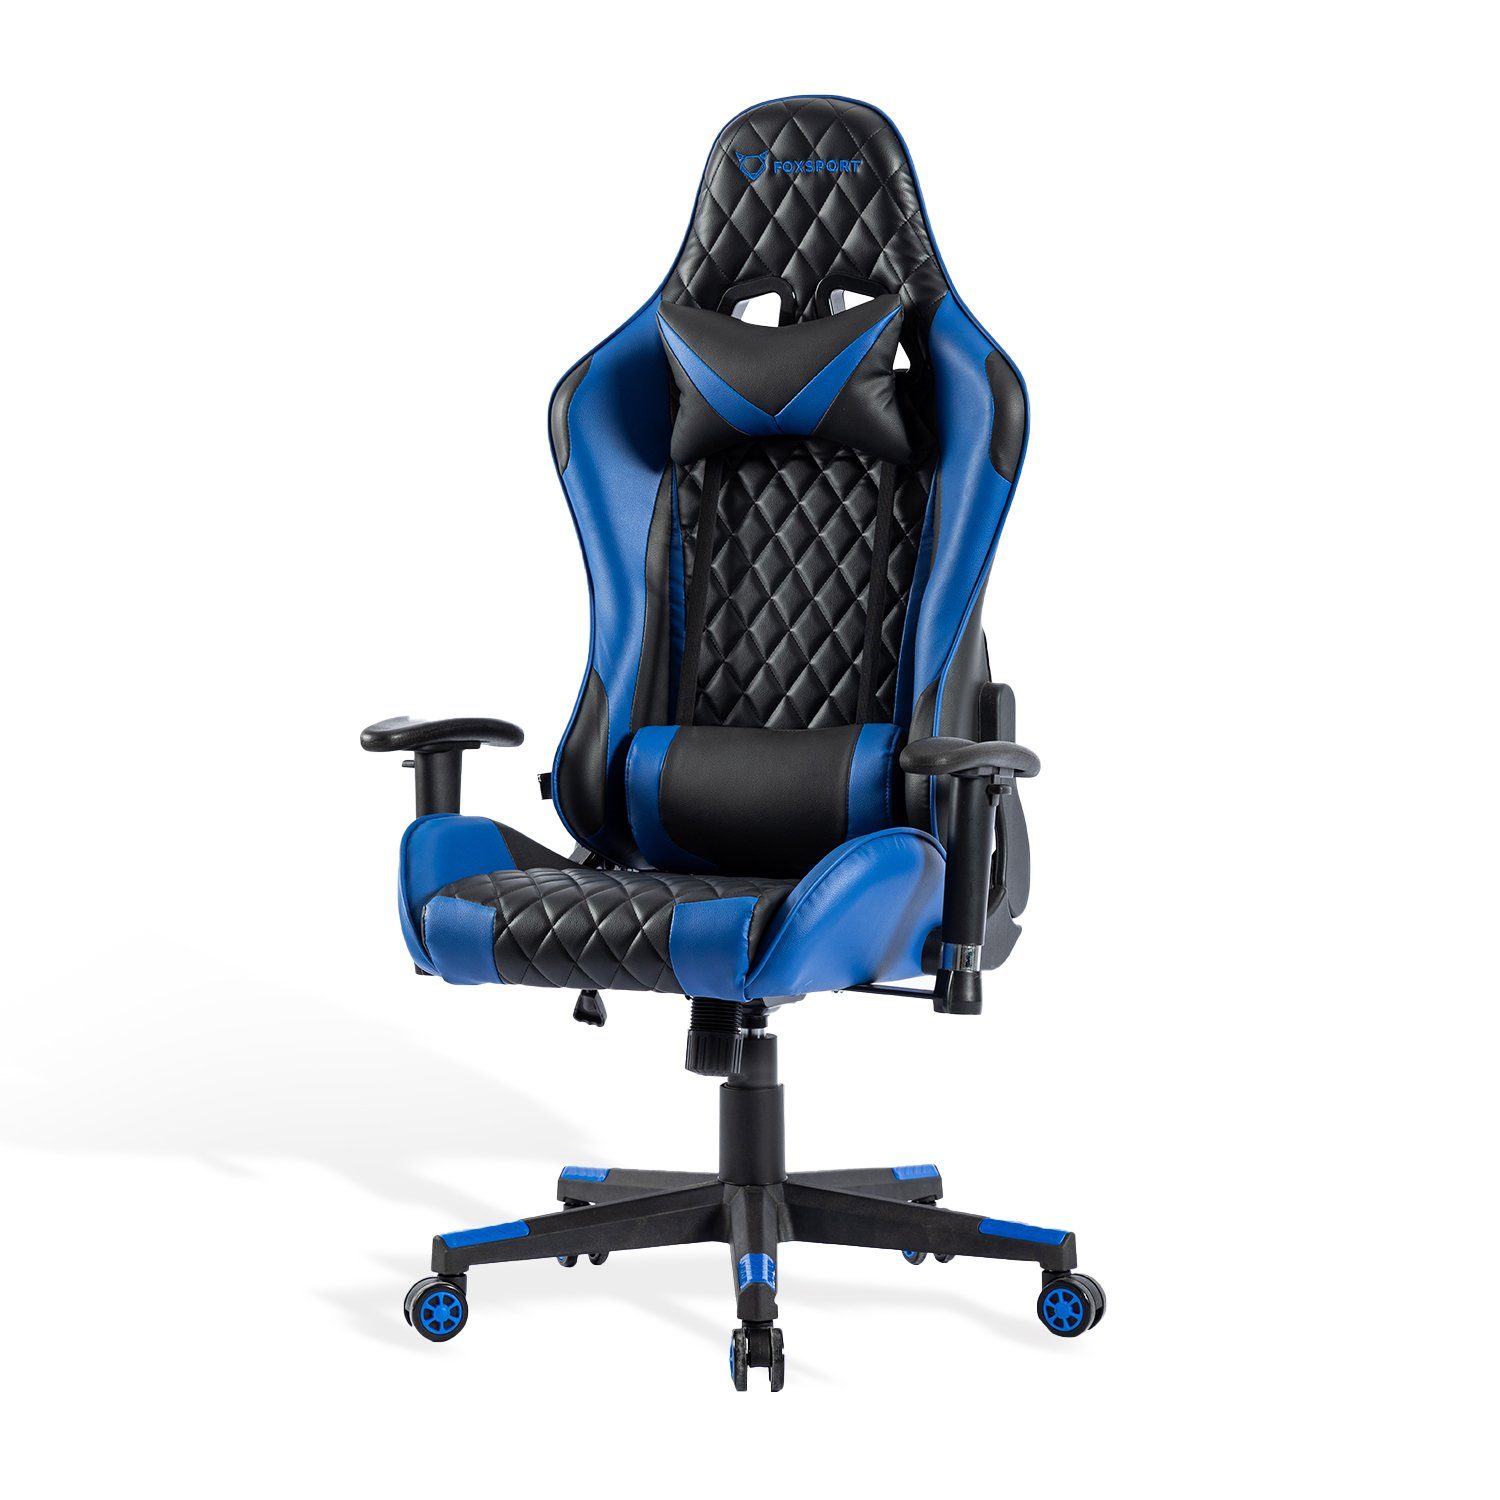 FOXSPORT Gaming-Stuhl ergonomisch Gamer Stühle (Professioneller Gamingstuhl), Eingebauter Wippmechanismus, Max. Belastbarkeit: 150 kg